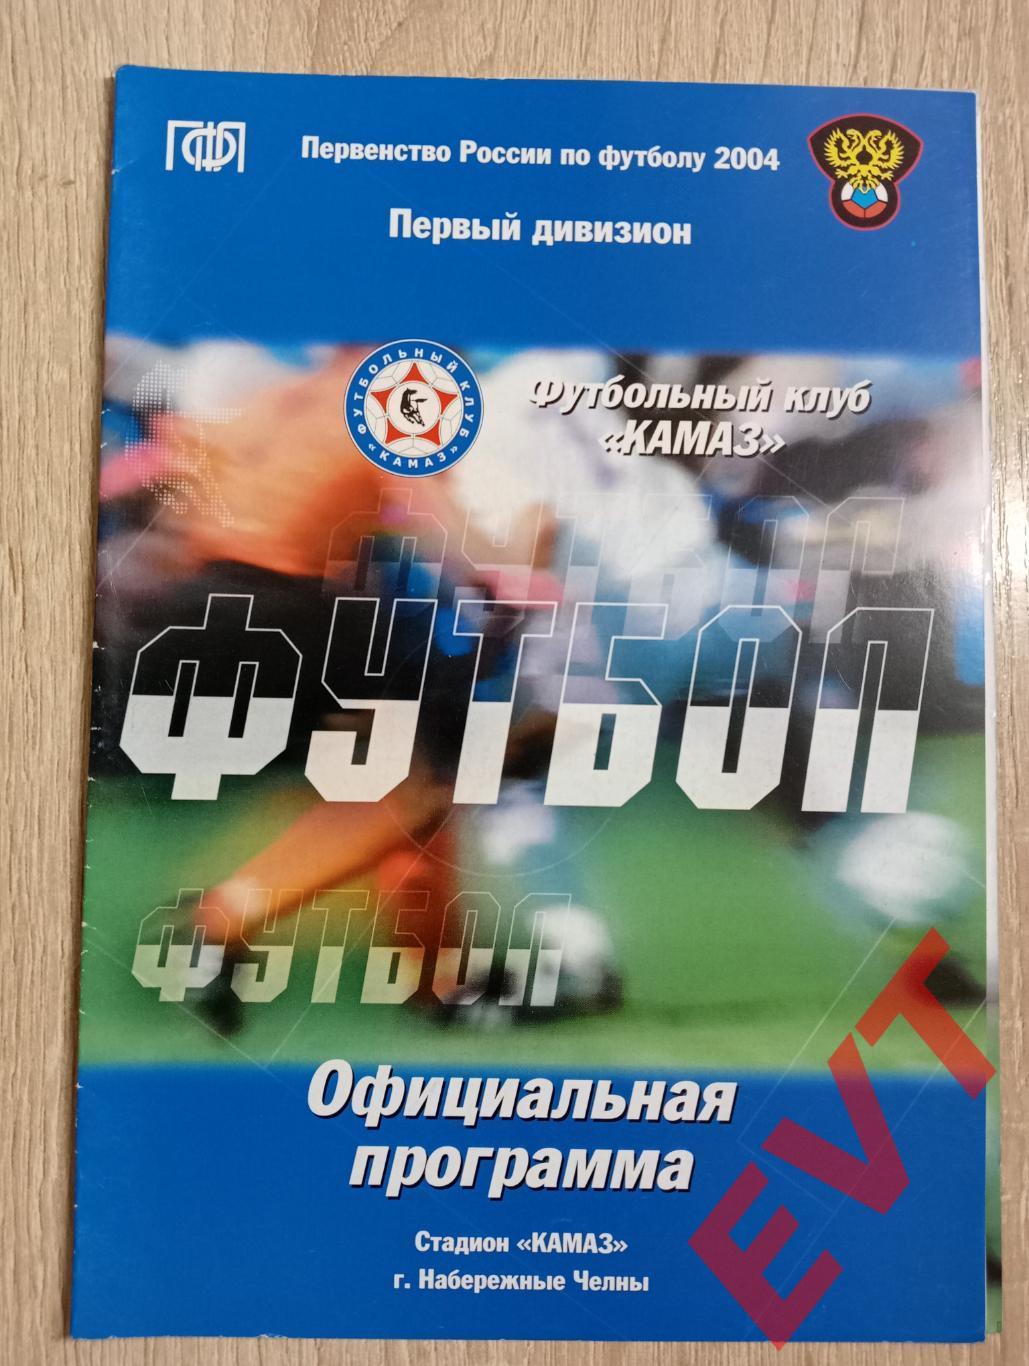 КАМАЗ Набережные Челны - Динамо Брянск. 1 дивизион. 4.08.2004.